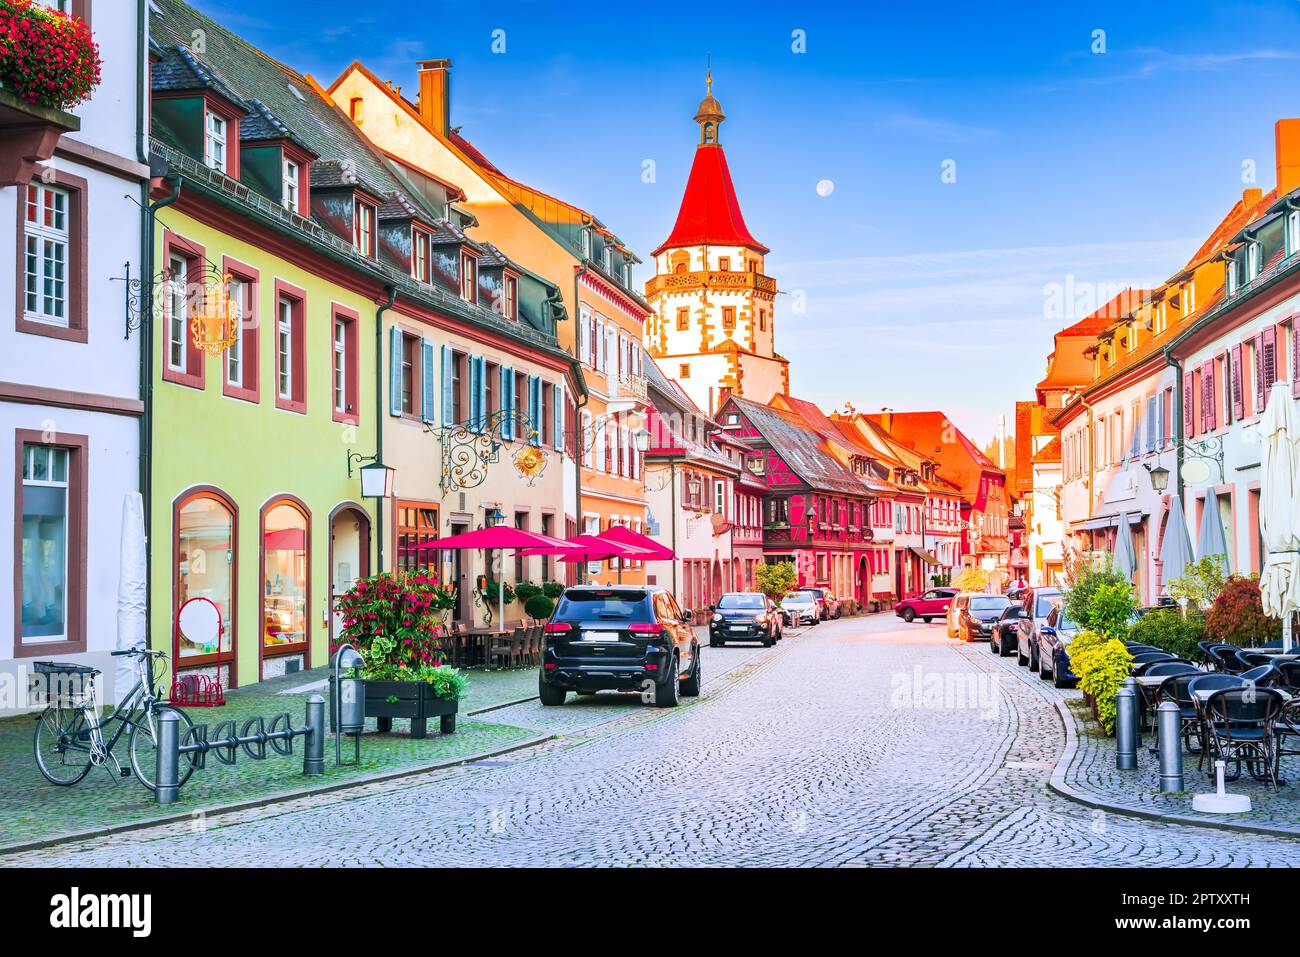 Gengenbach, Allemagne. Pittoresque lever du soleil ville charmante dans la région de la Forêt-Noire, connue pour ses rues historiques et pavées à pans de bois. Nigge Banque D'Images